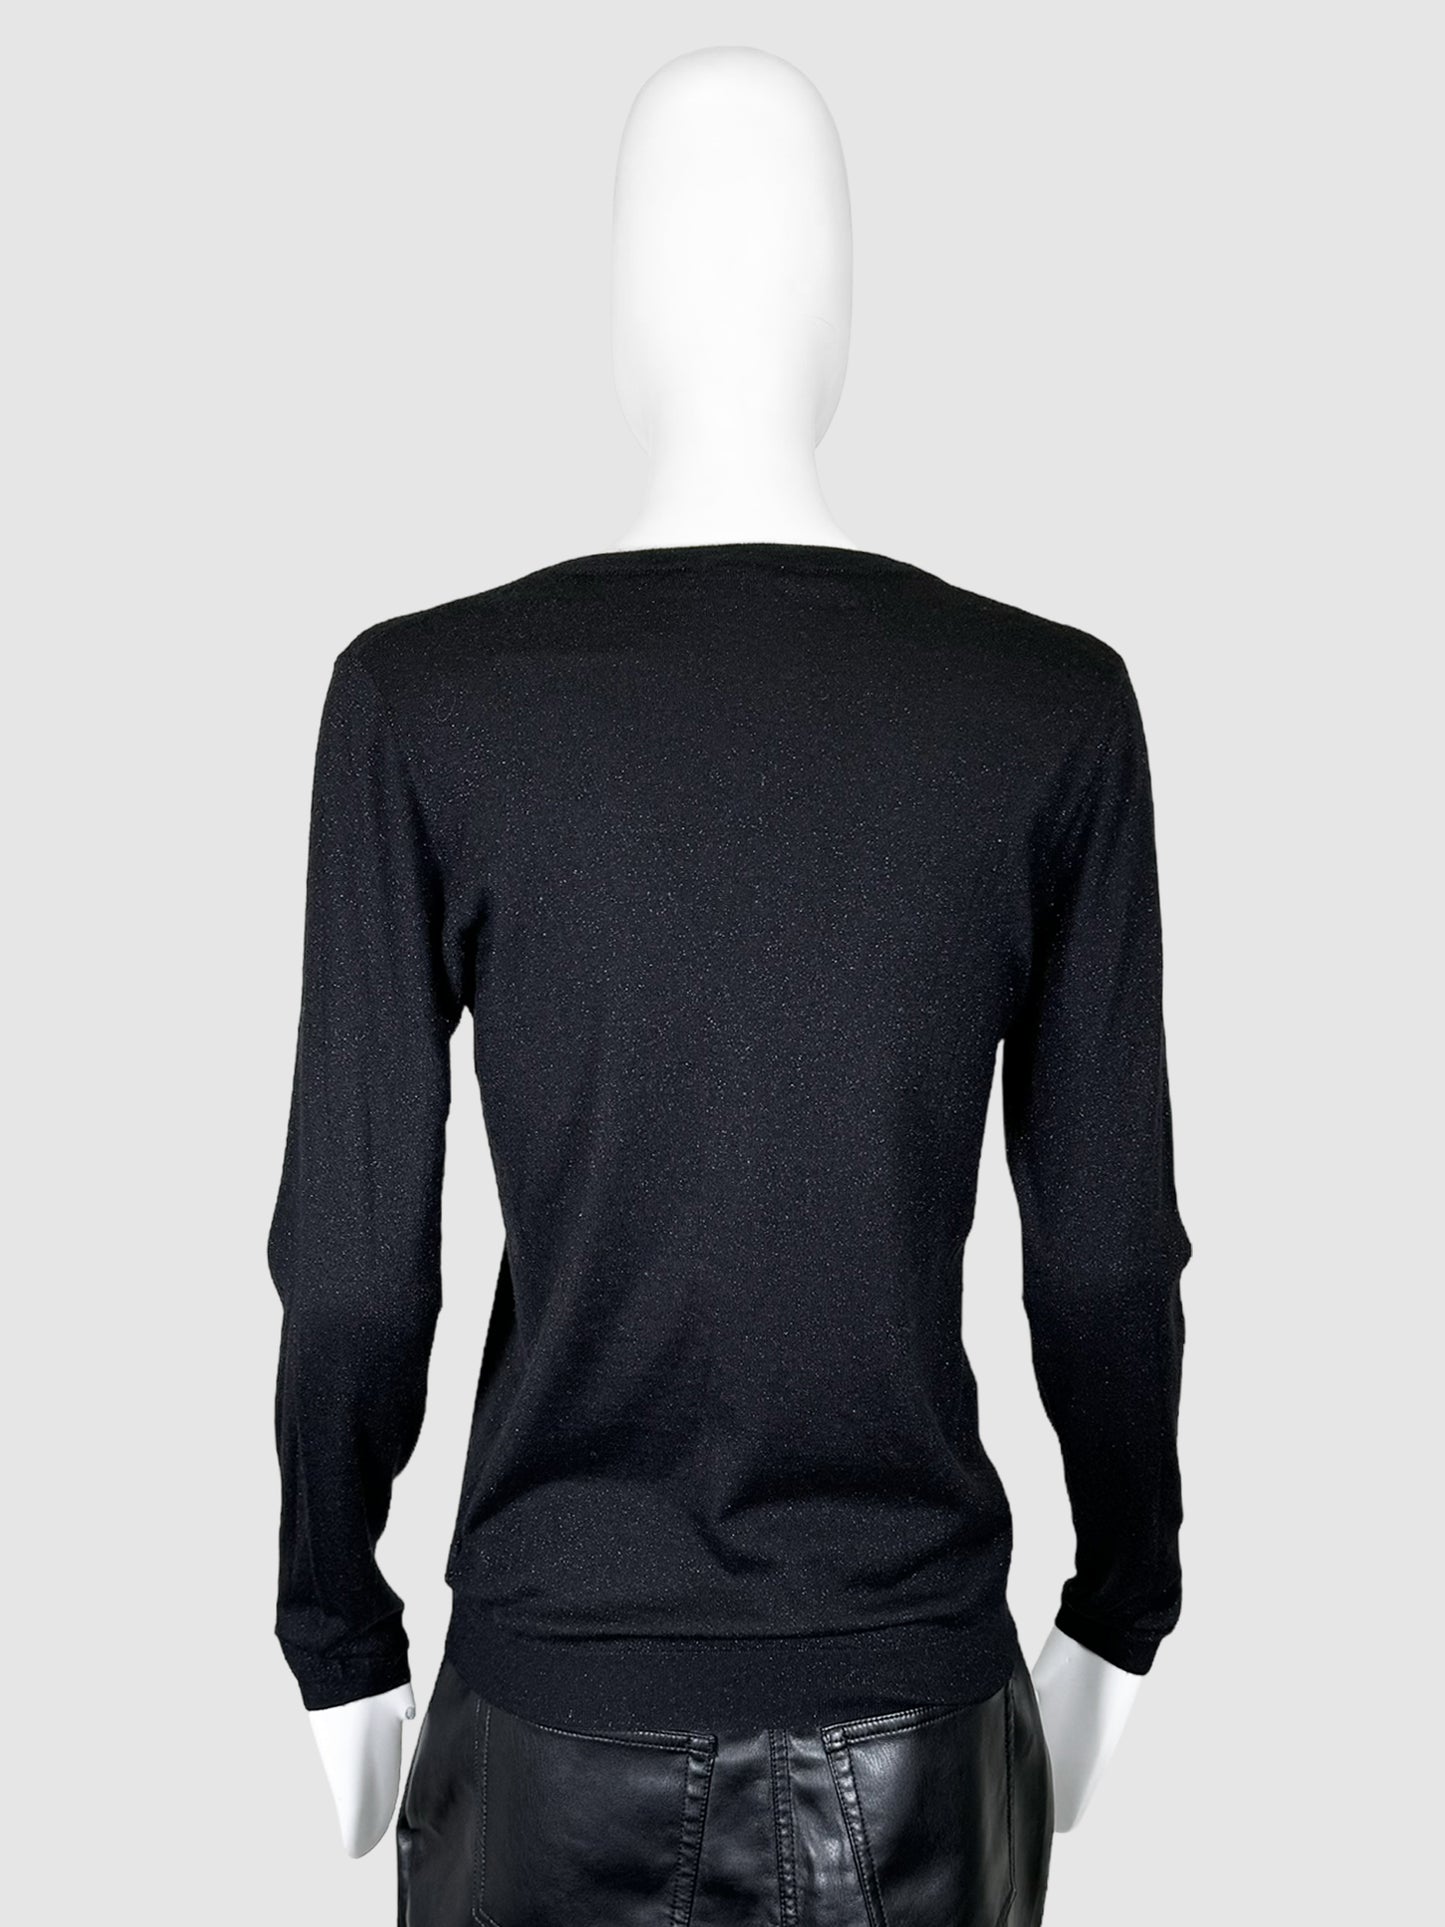 Brunello Cucinelli Sparkly Cashmere Sweater - Size M